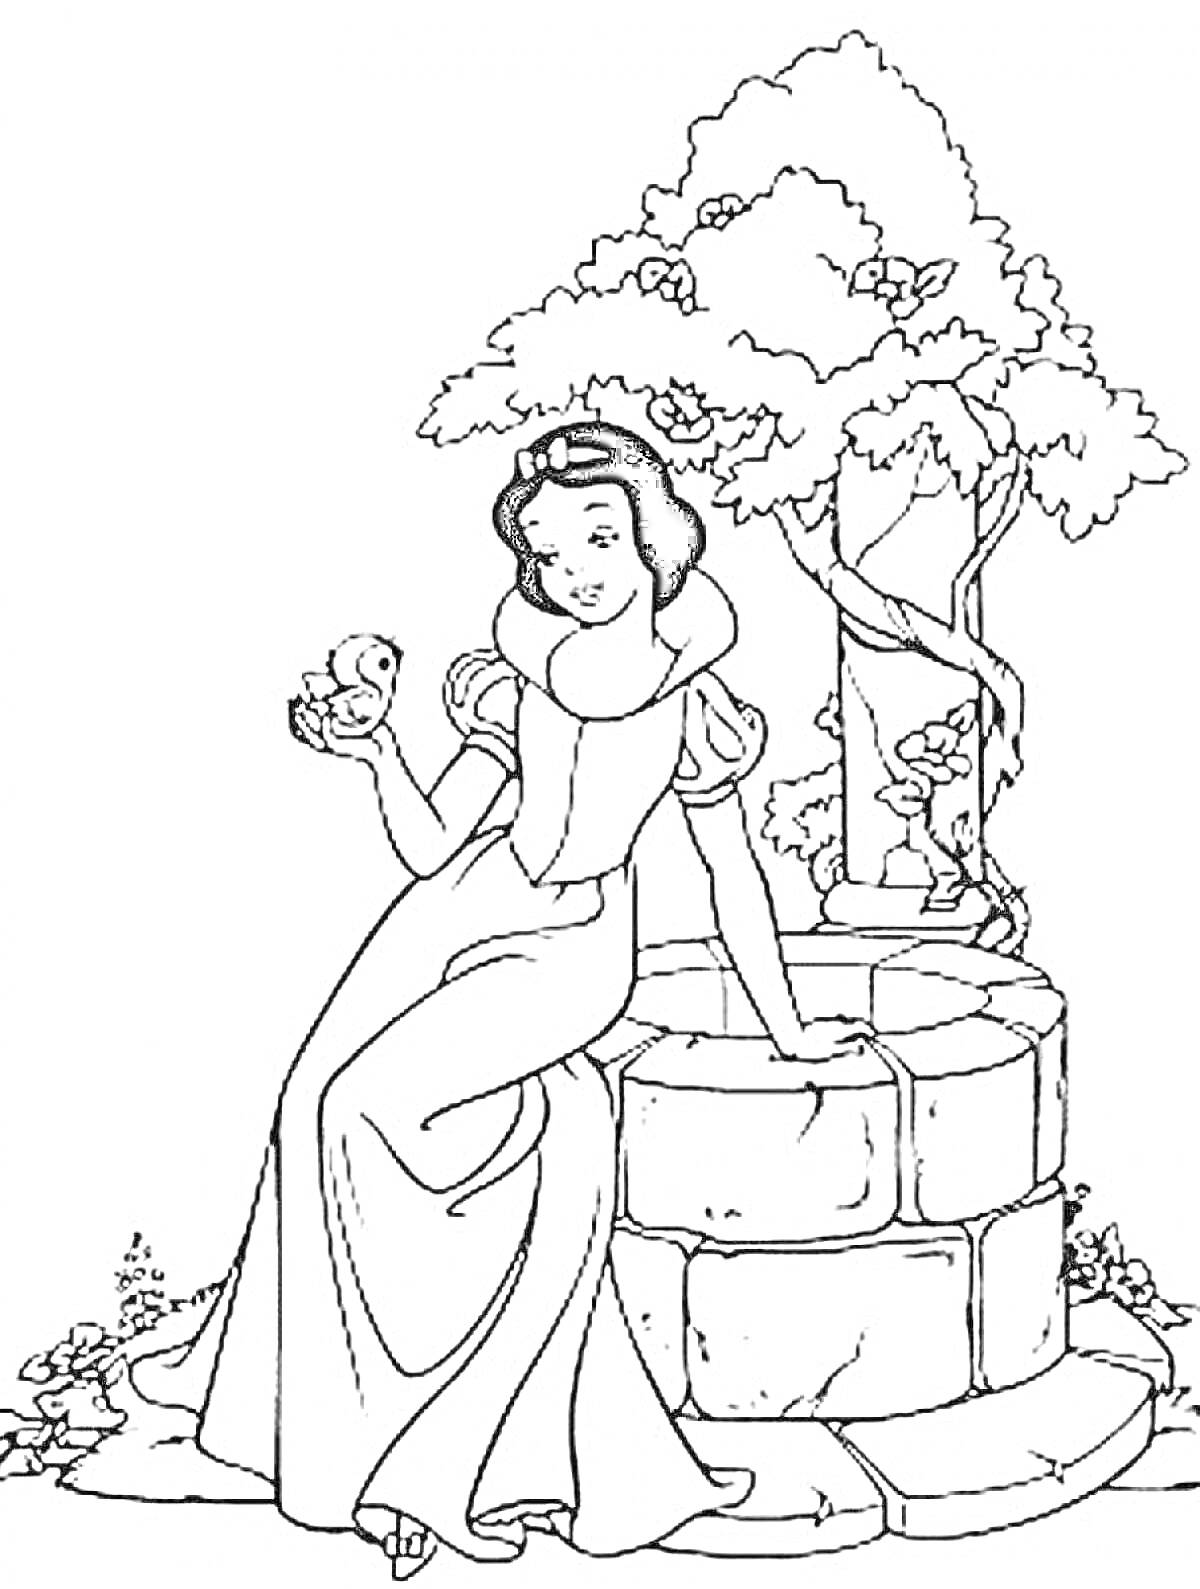 Раскраска Белоснежка сидит на колодце с птицей в руке, рядом дерево и цветы